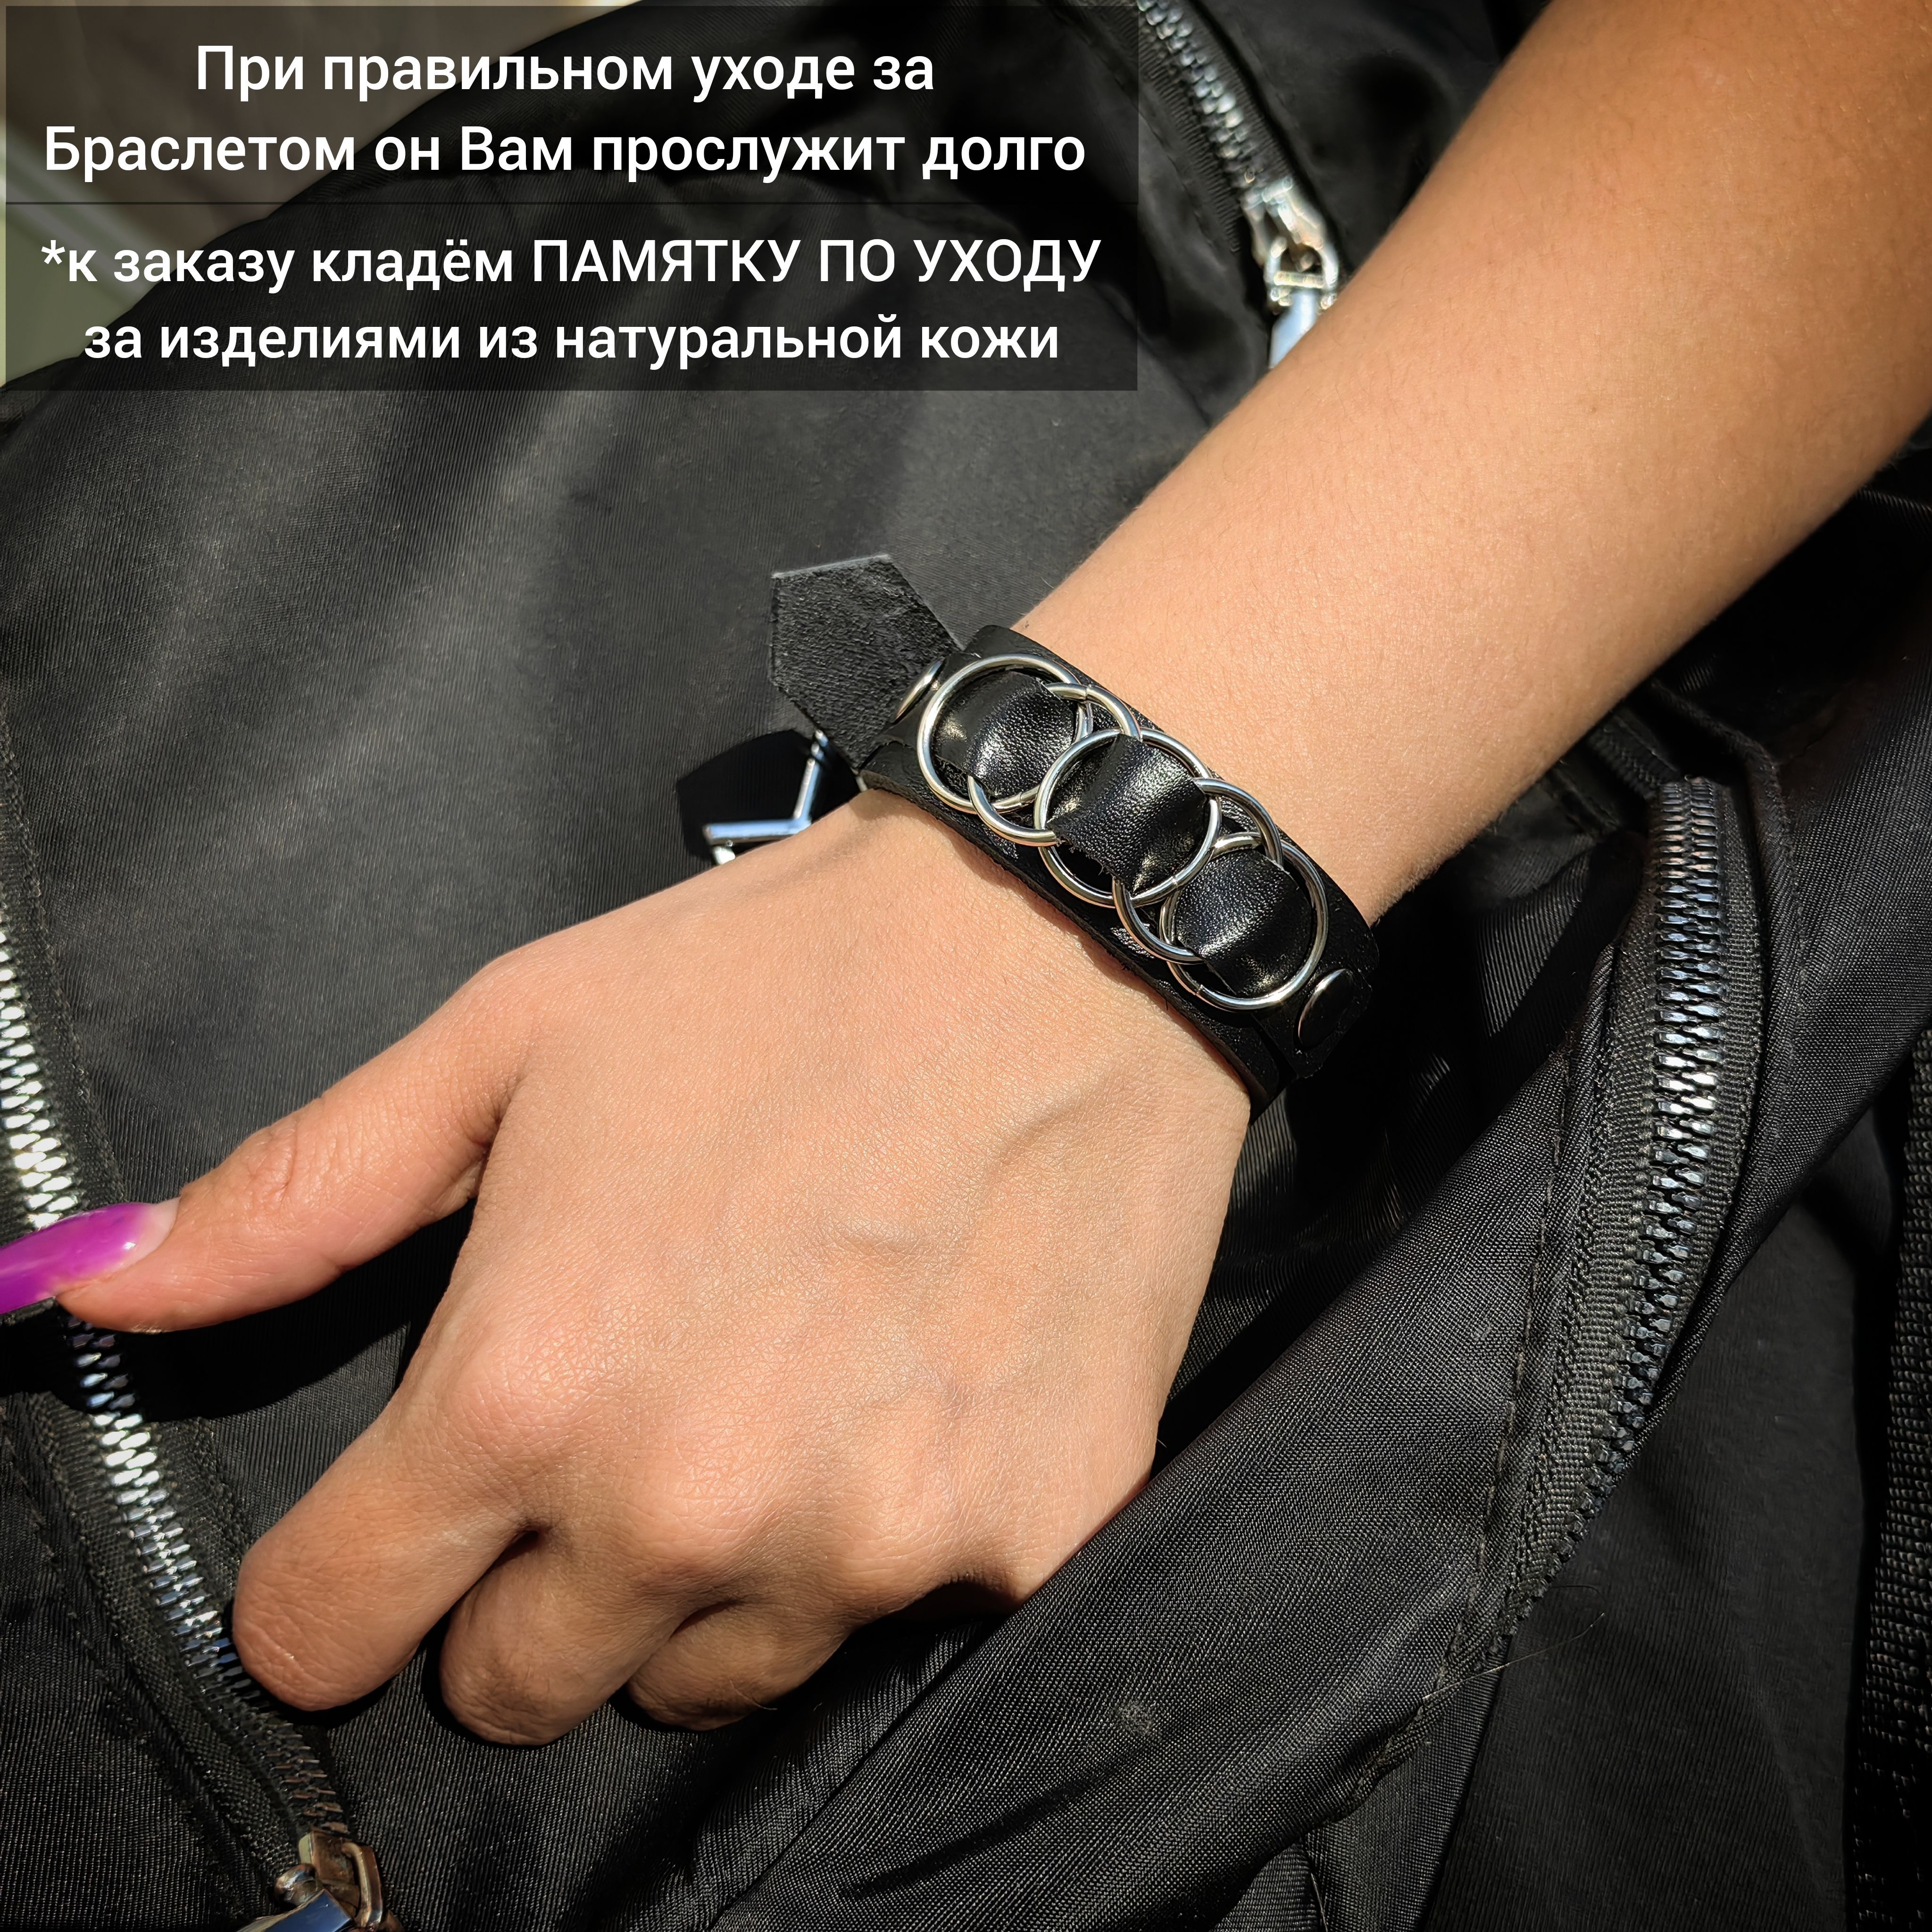 Ассортимент e-pandora: купить браслет из кожи в Украине